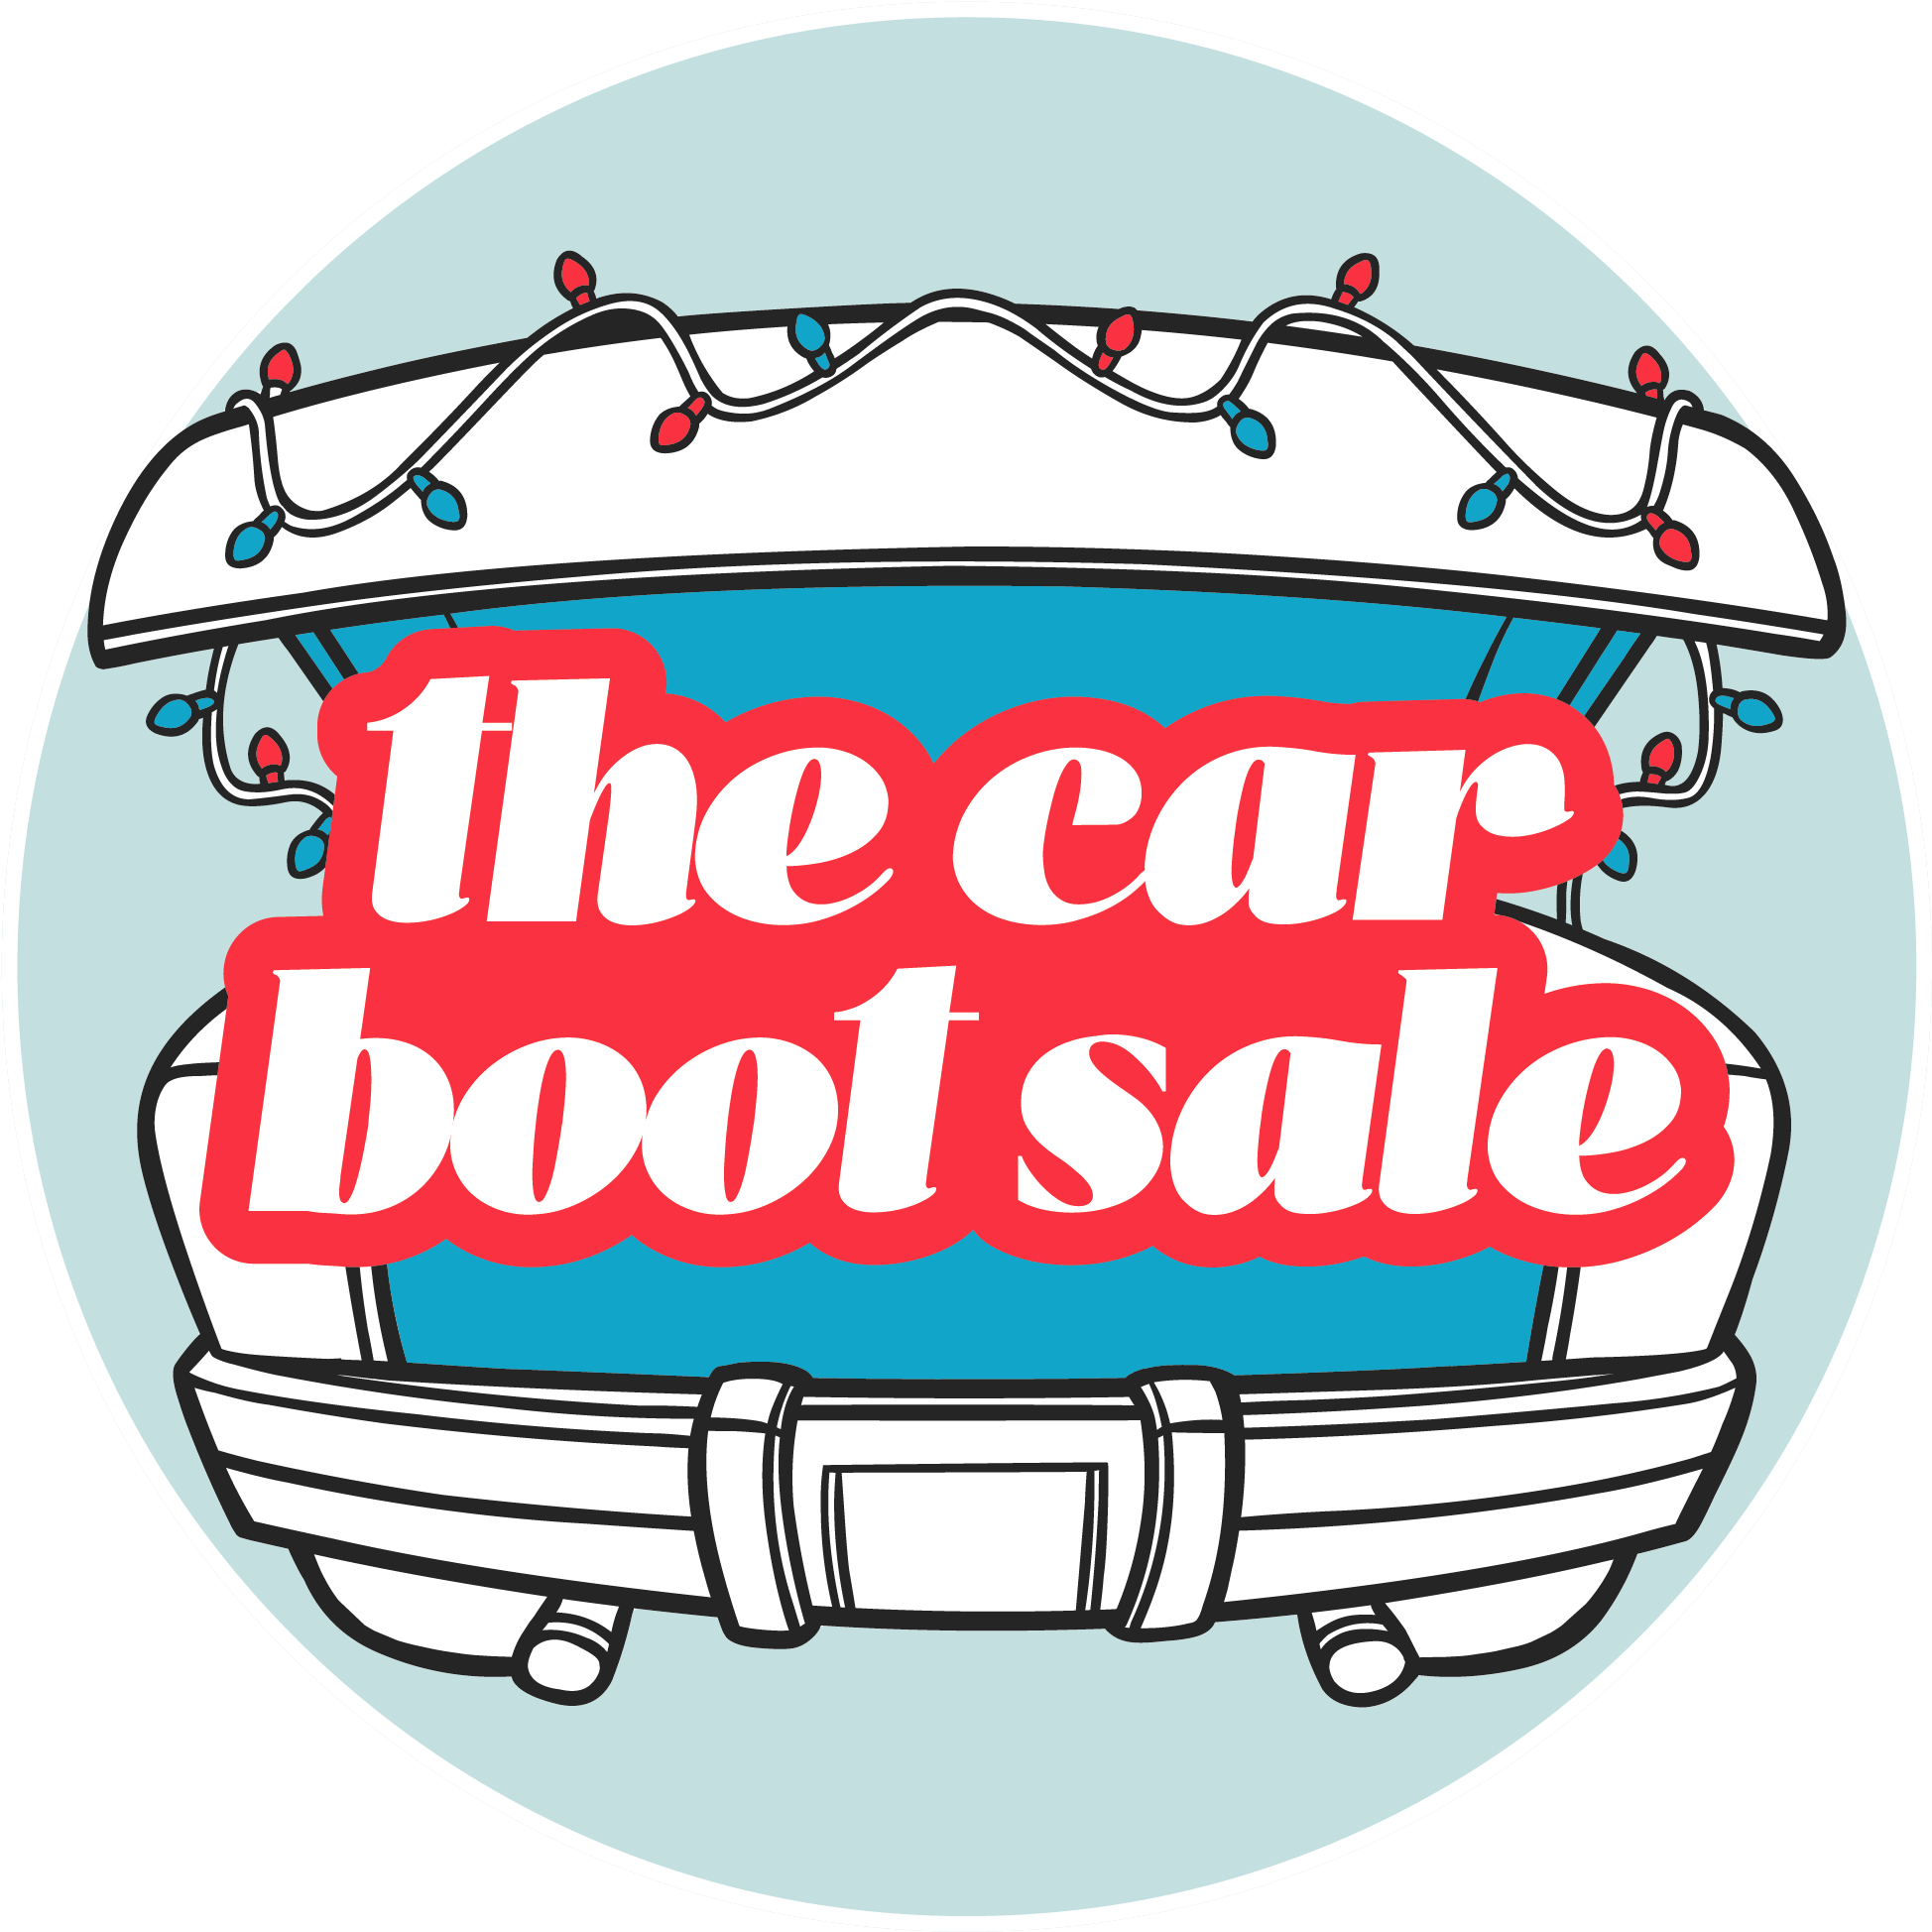 Car Boot Sale In Uae (2042x2029)